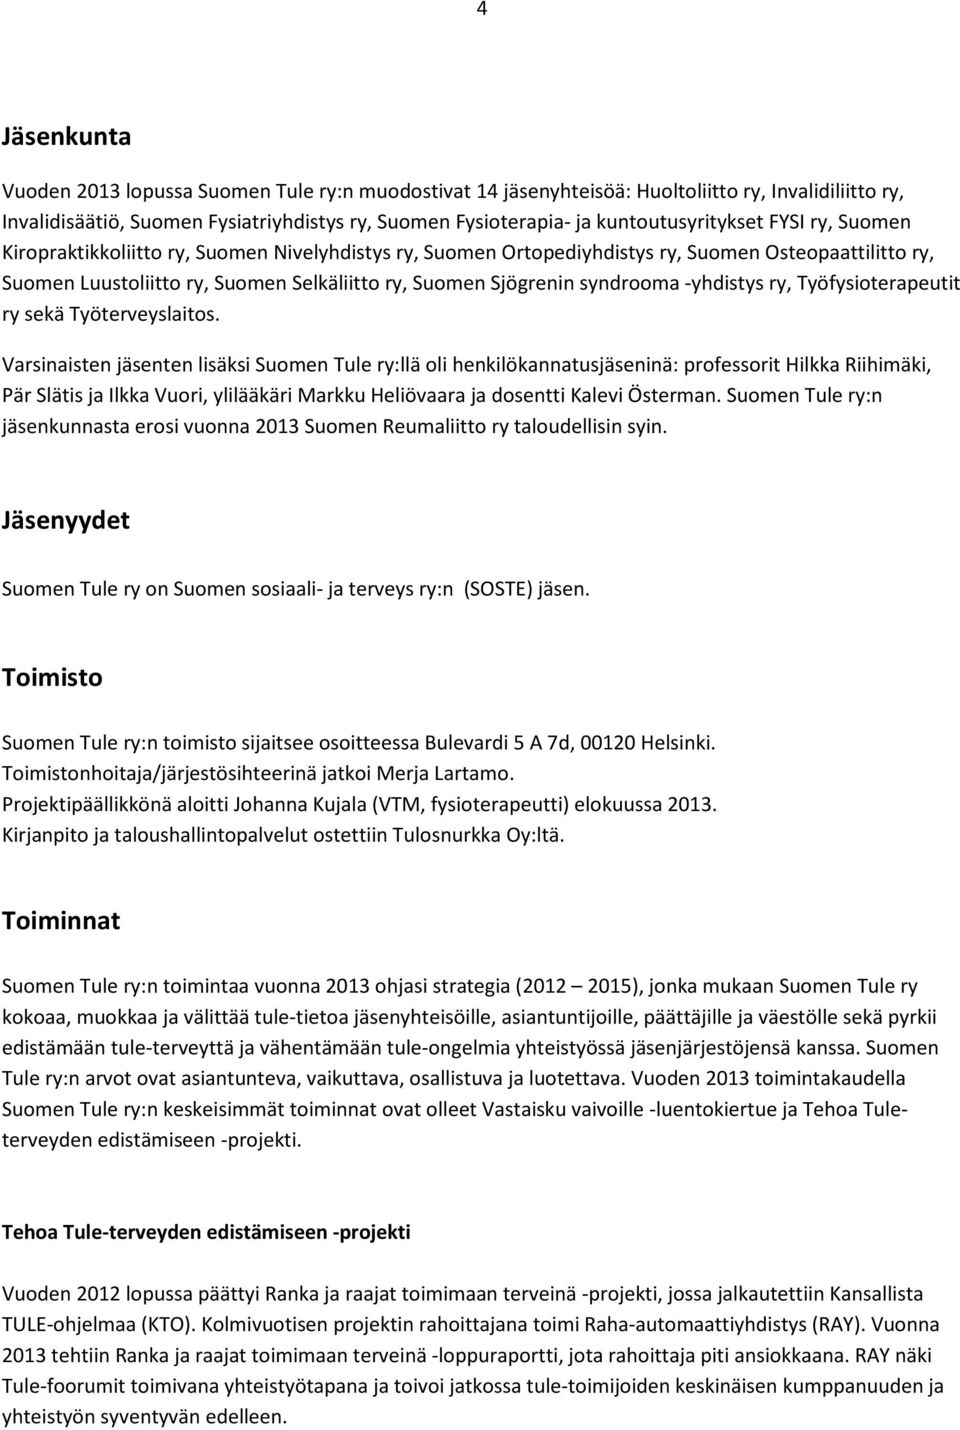 Sjögrenin syndrooma -yhdistys ry, Työfysioterapeutit ry sekä Työterveyslaitos.